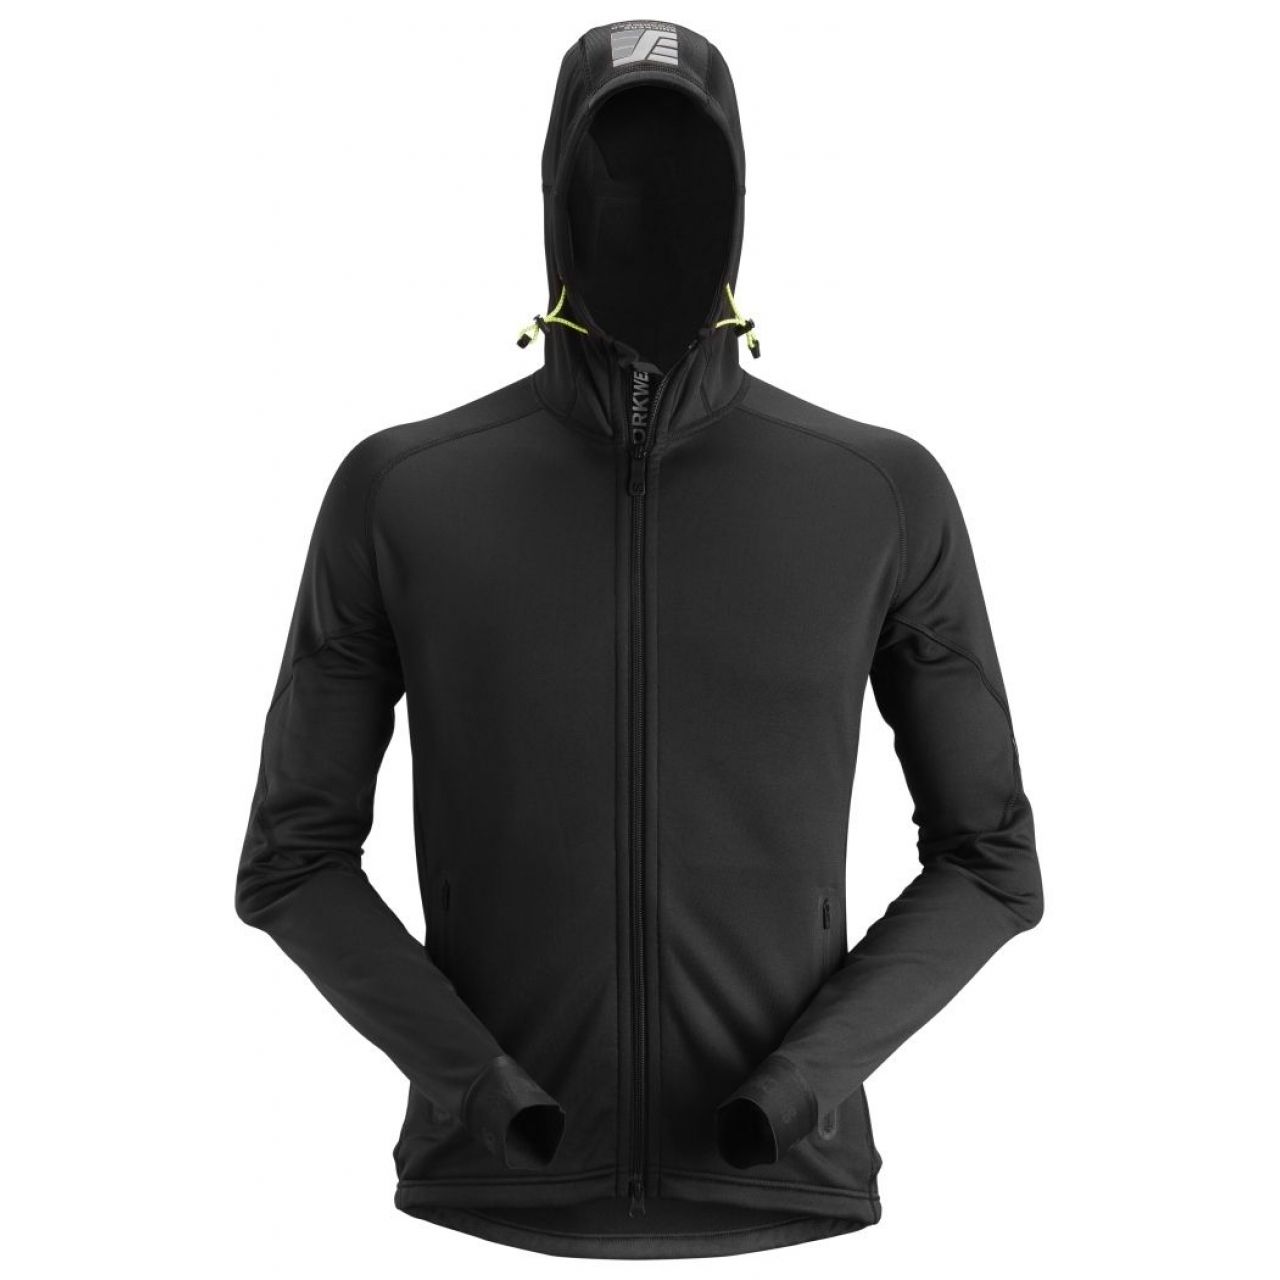 Chaqueta elastica FlexiWork fleece Polartec® 2.0 con capucha negro talla XXL